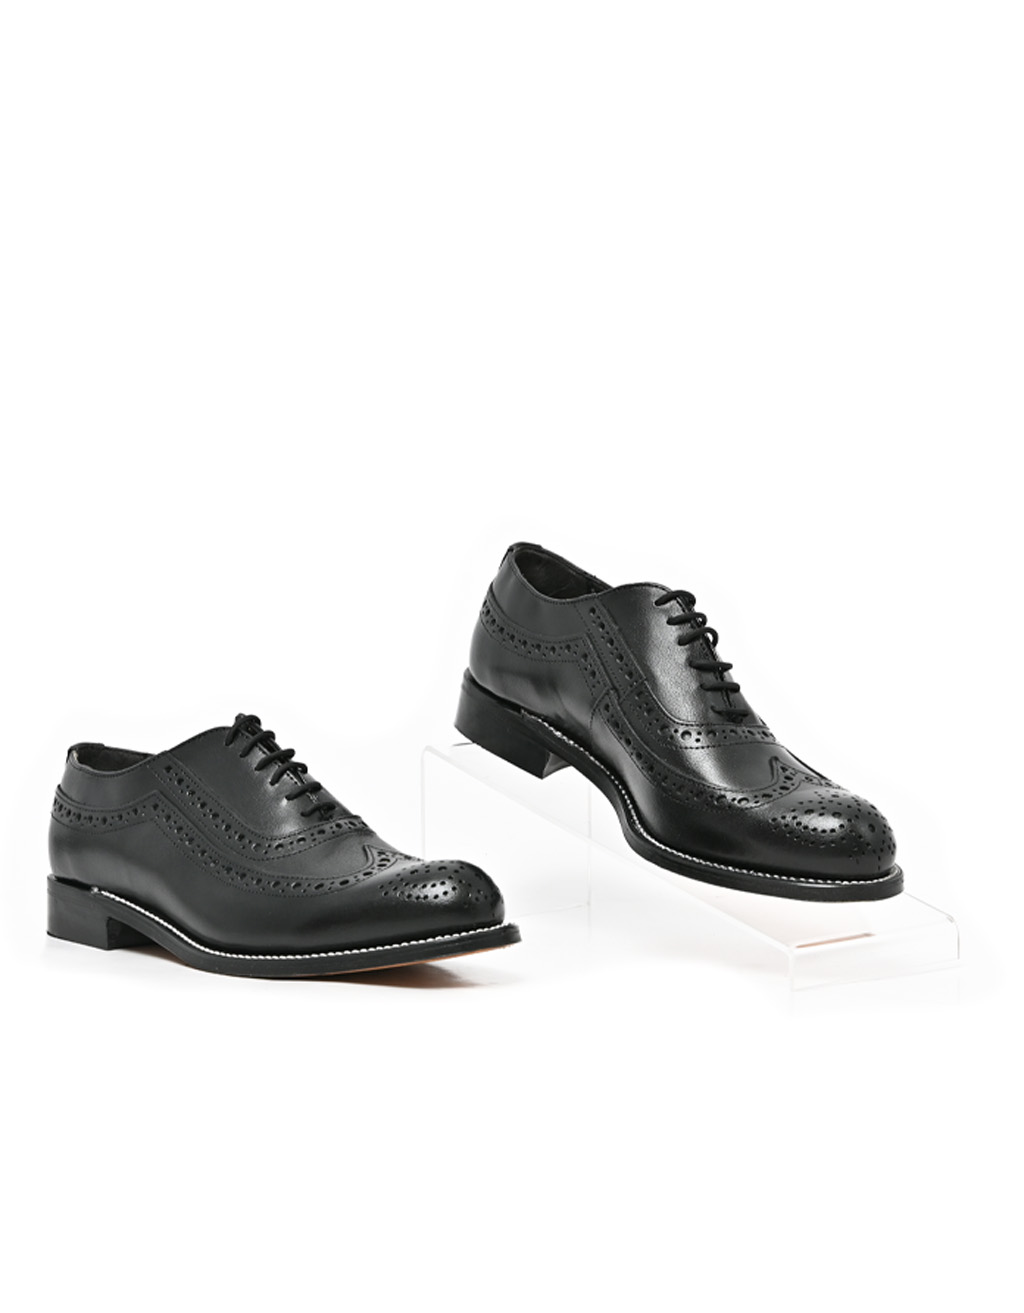 Mens Barker, Elliot, Formal Black Lace Up – Bolton Shoes